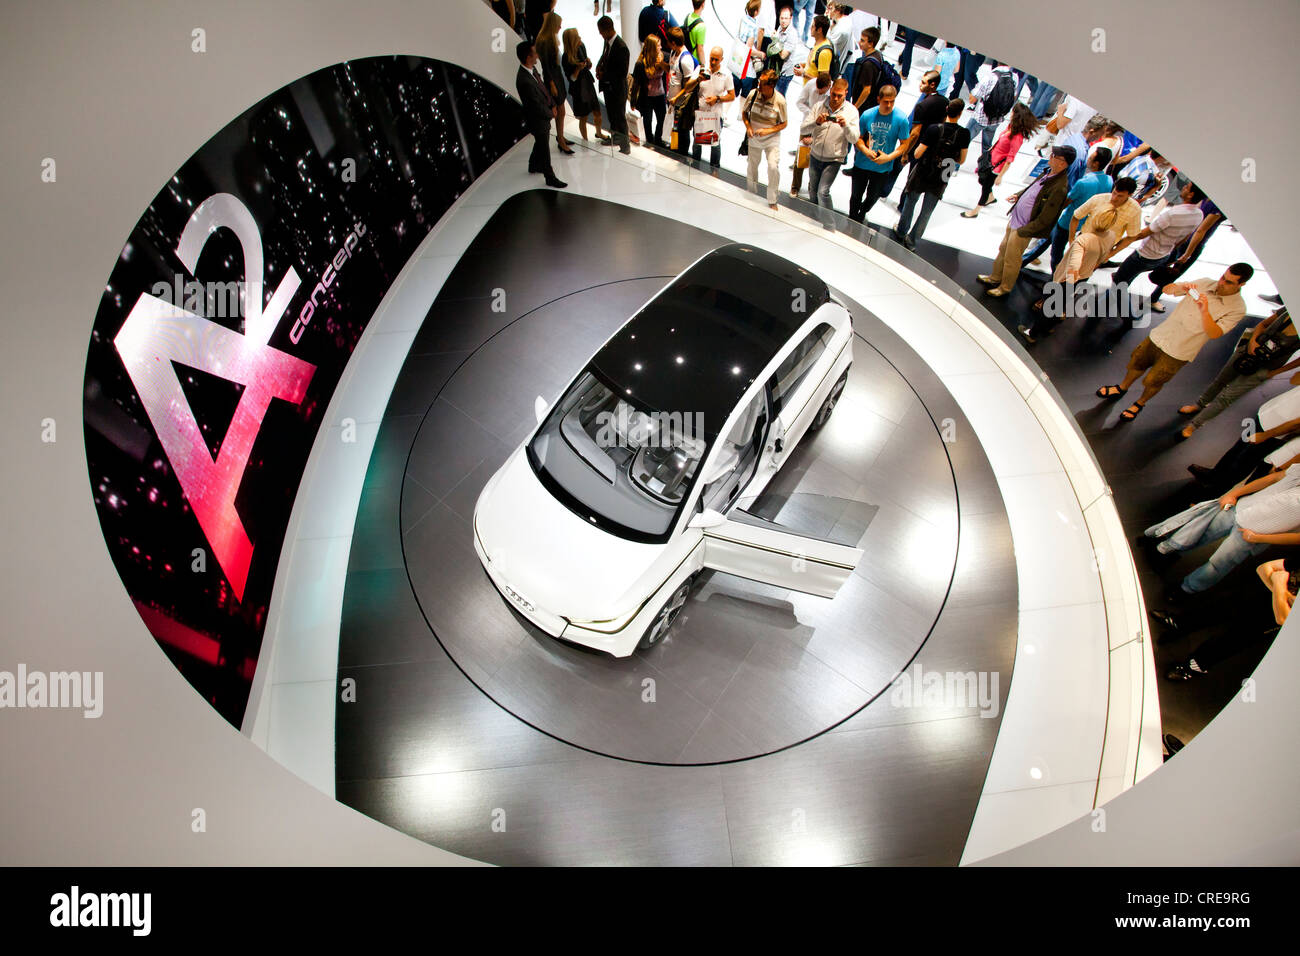 Étude et première mondiale de l'Audi A2 concept, Audi AG, 64e Salon International de l'automobile, de l'AIA, 2011, Frankfurt am Main, Hesse Banque D'Images